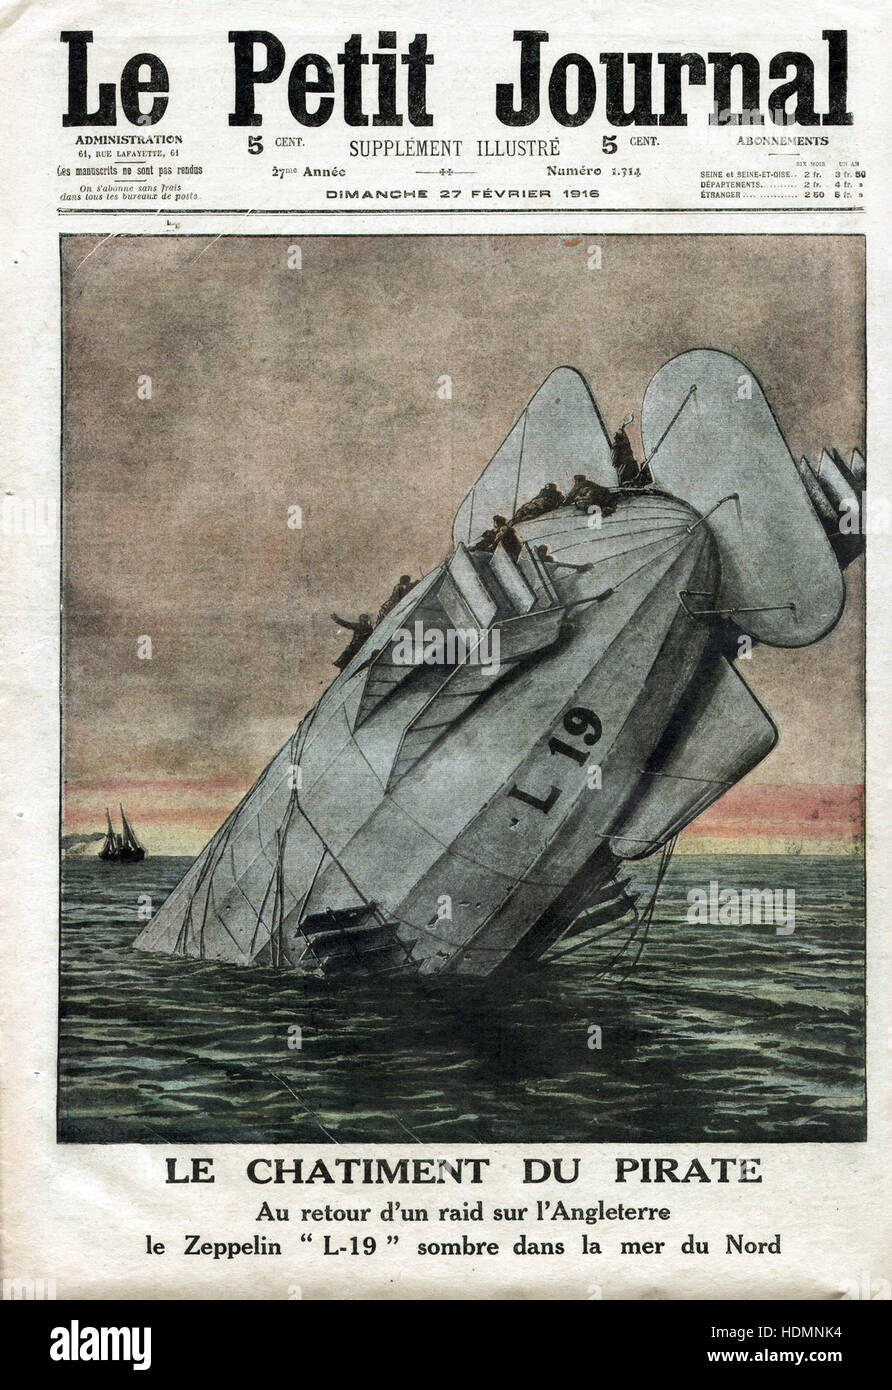 'Le Petit Journal' - la punition de Pirate - à son retour d'un raid sur l'Angleterre le Zeppelin L 19 se jette dans la mer du Nord (traduit de l'anglais) - 1916 Banque D'Images